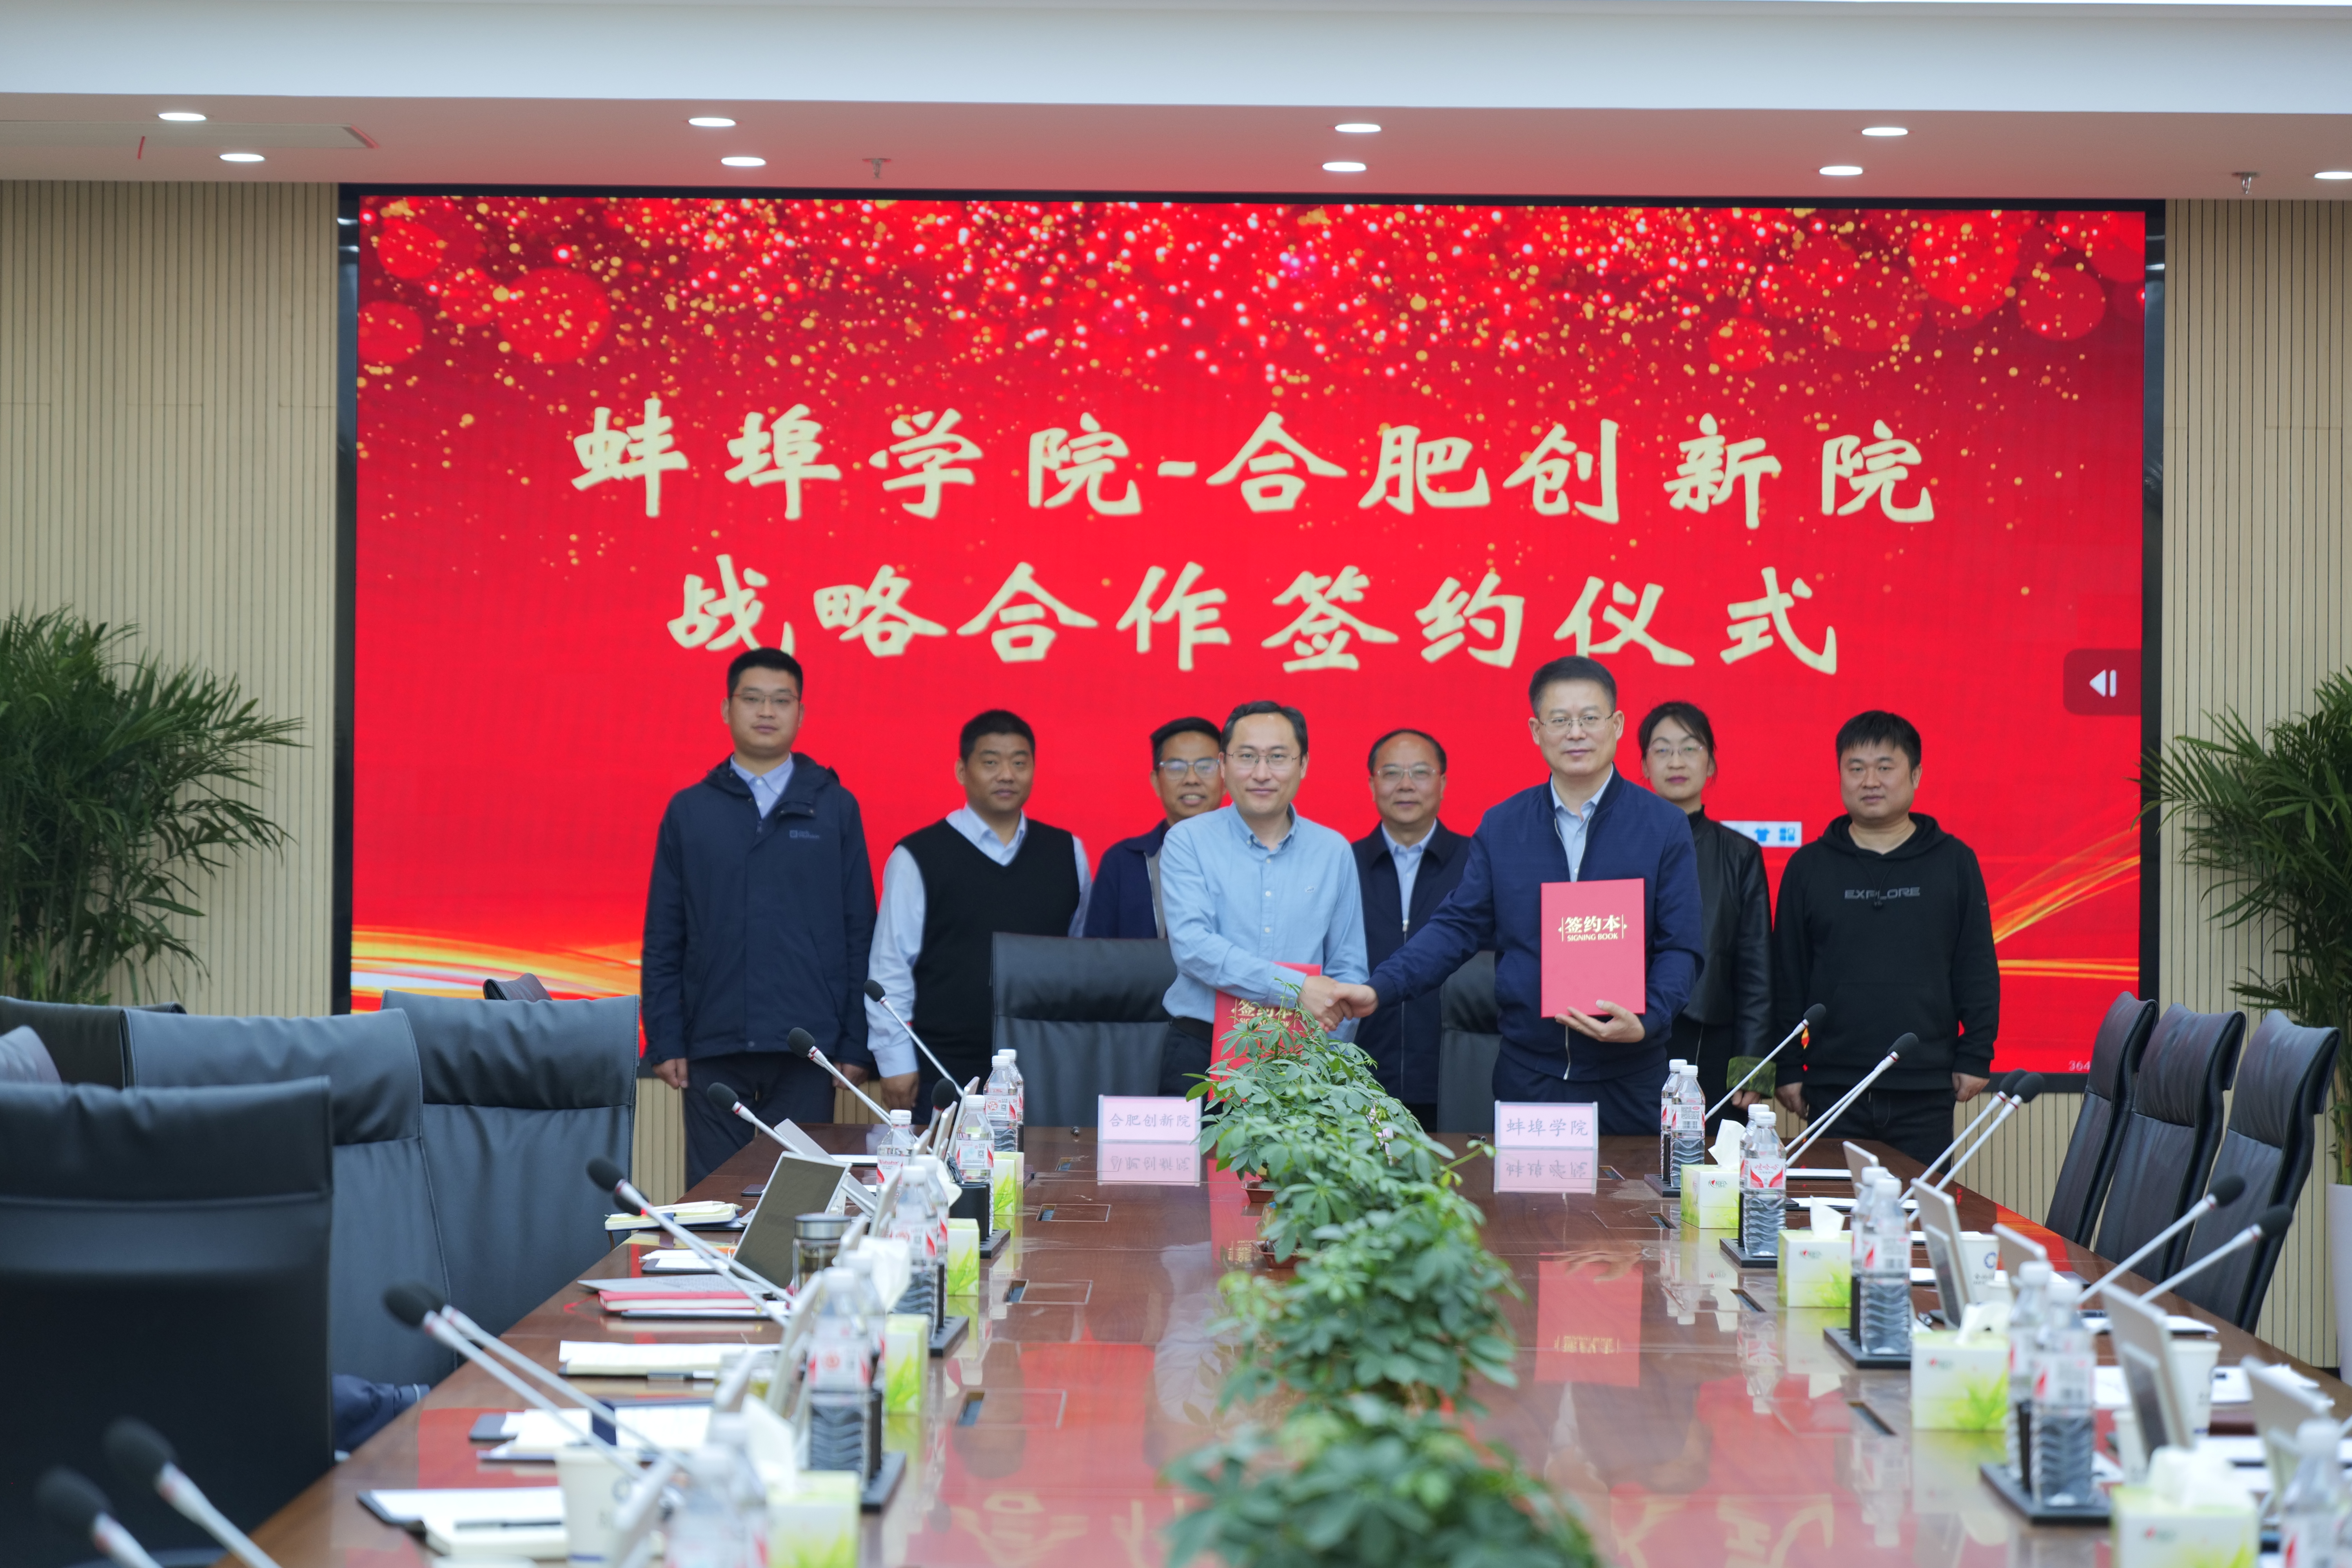  合肥创新院与蚌埠学院签订战略合作协议！ 